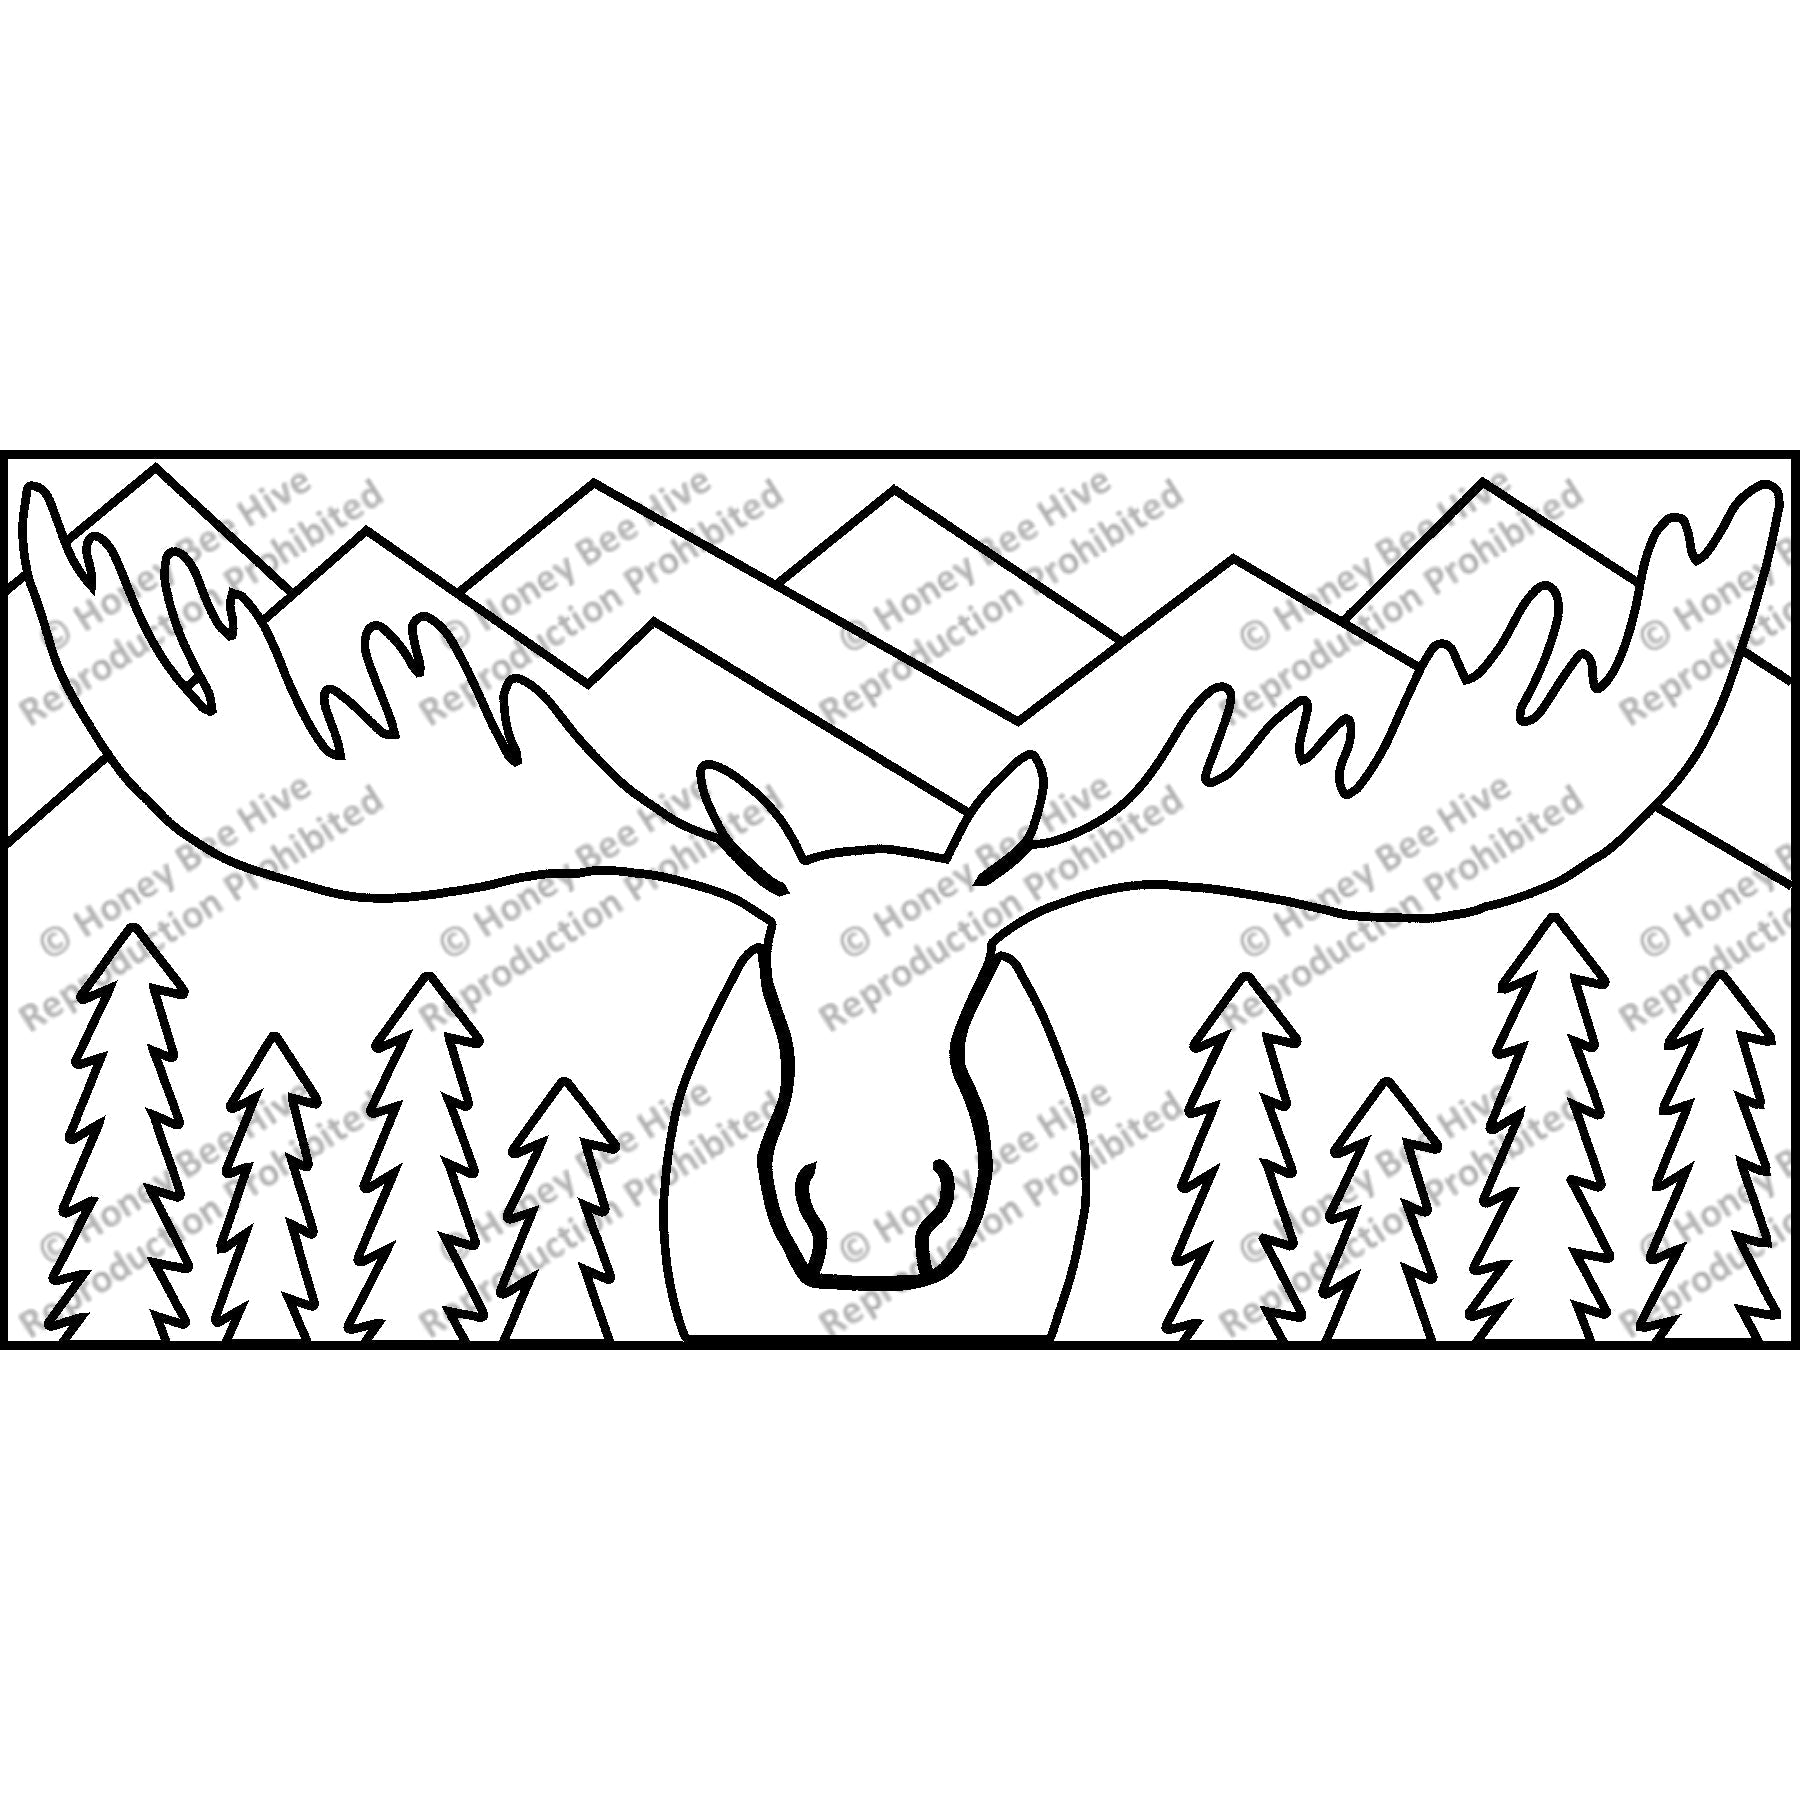 Moose on the Loose, rug hooking pattern